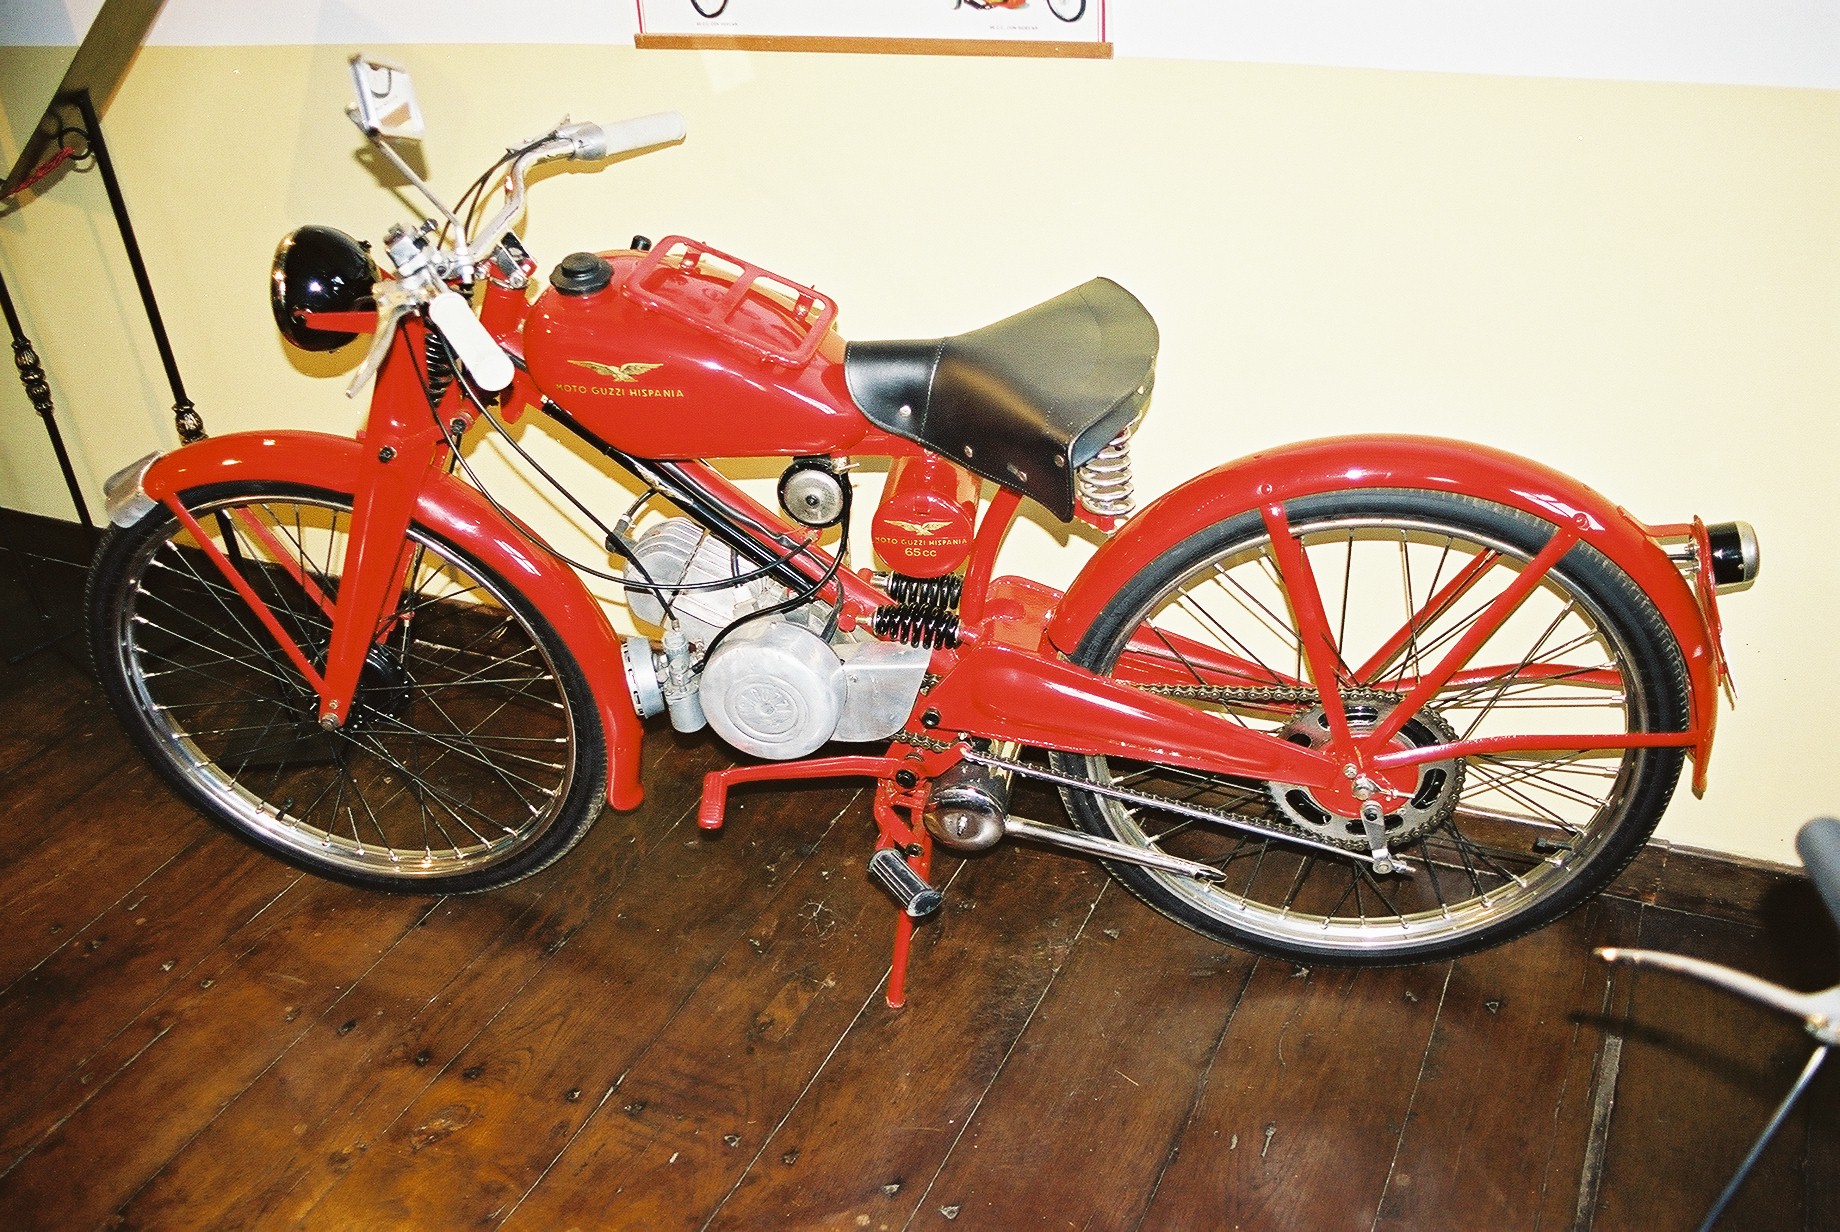 Moto Guzzi Hispania - motorower produkowany w Hiszpanii w latach 50. i 60. XX wieku według licencji włoskiej. Eksponat ze zbiorów De la Pinta. Fot. Grzegorz Chmielewski